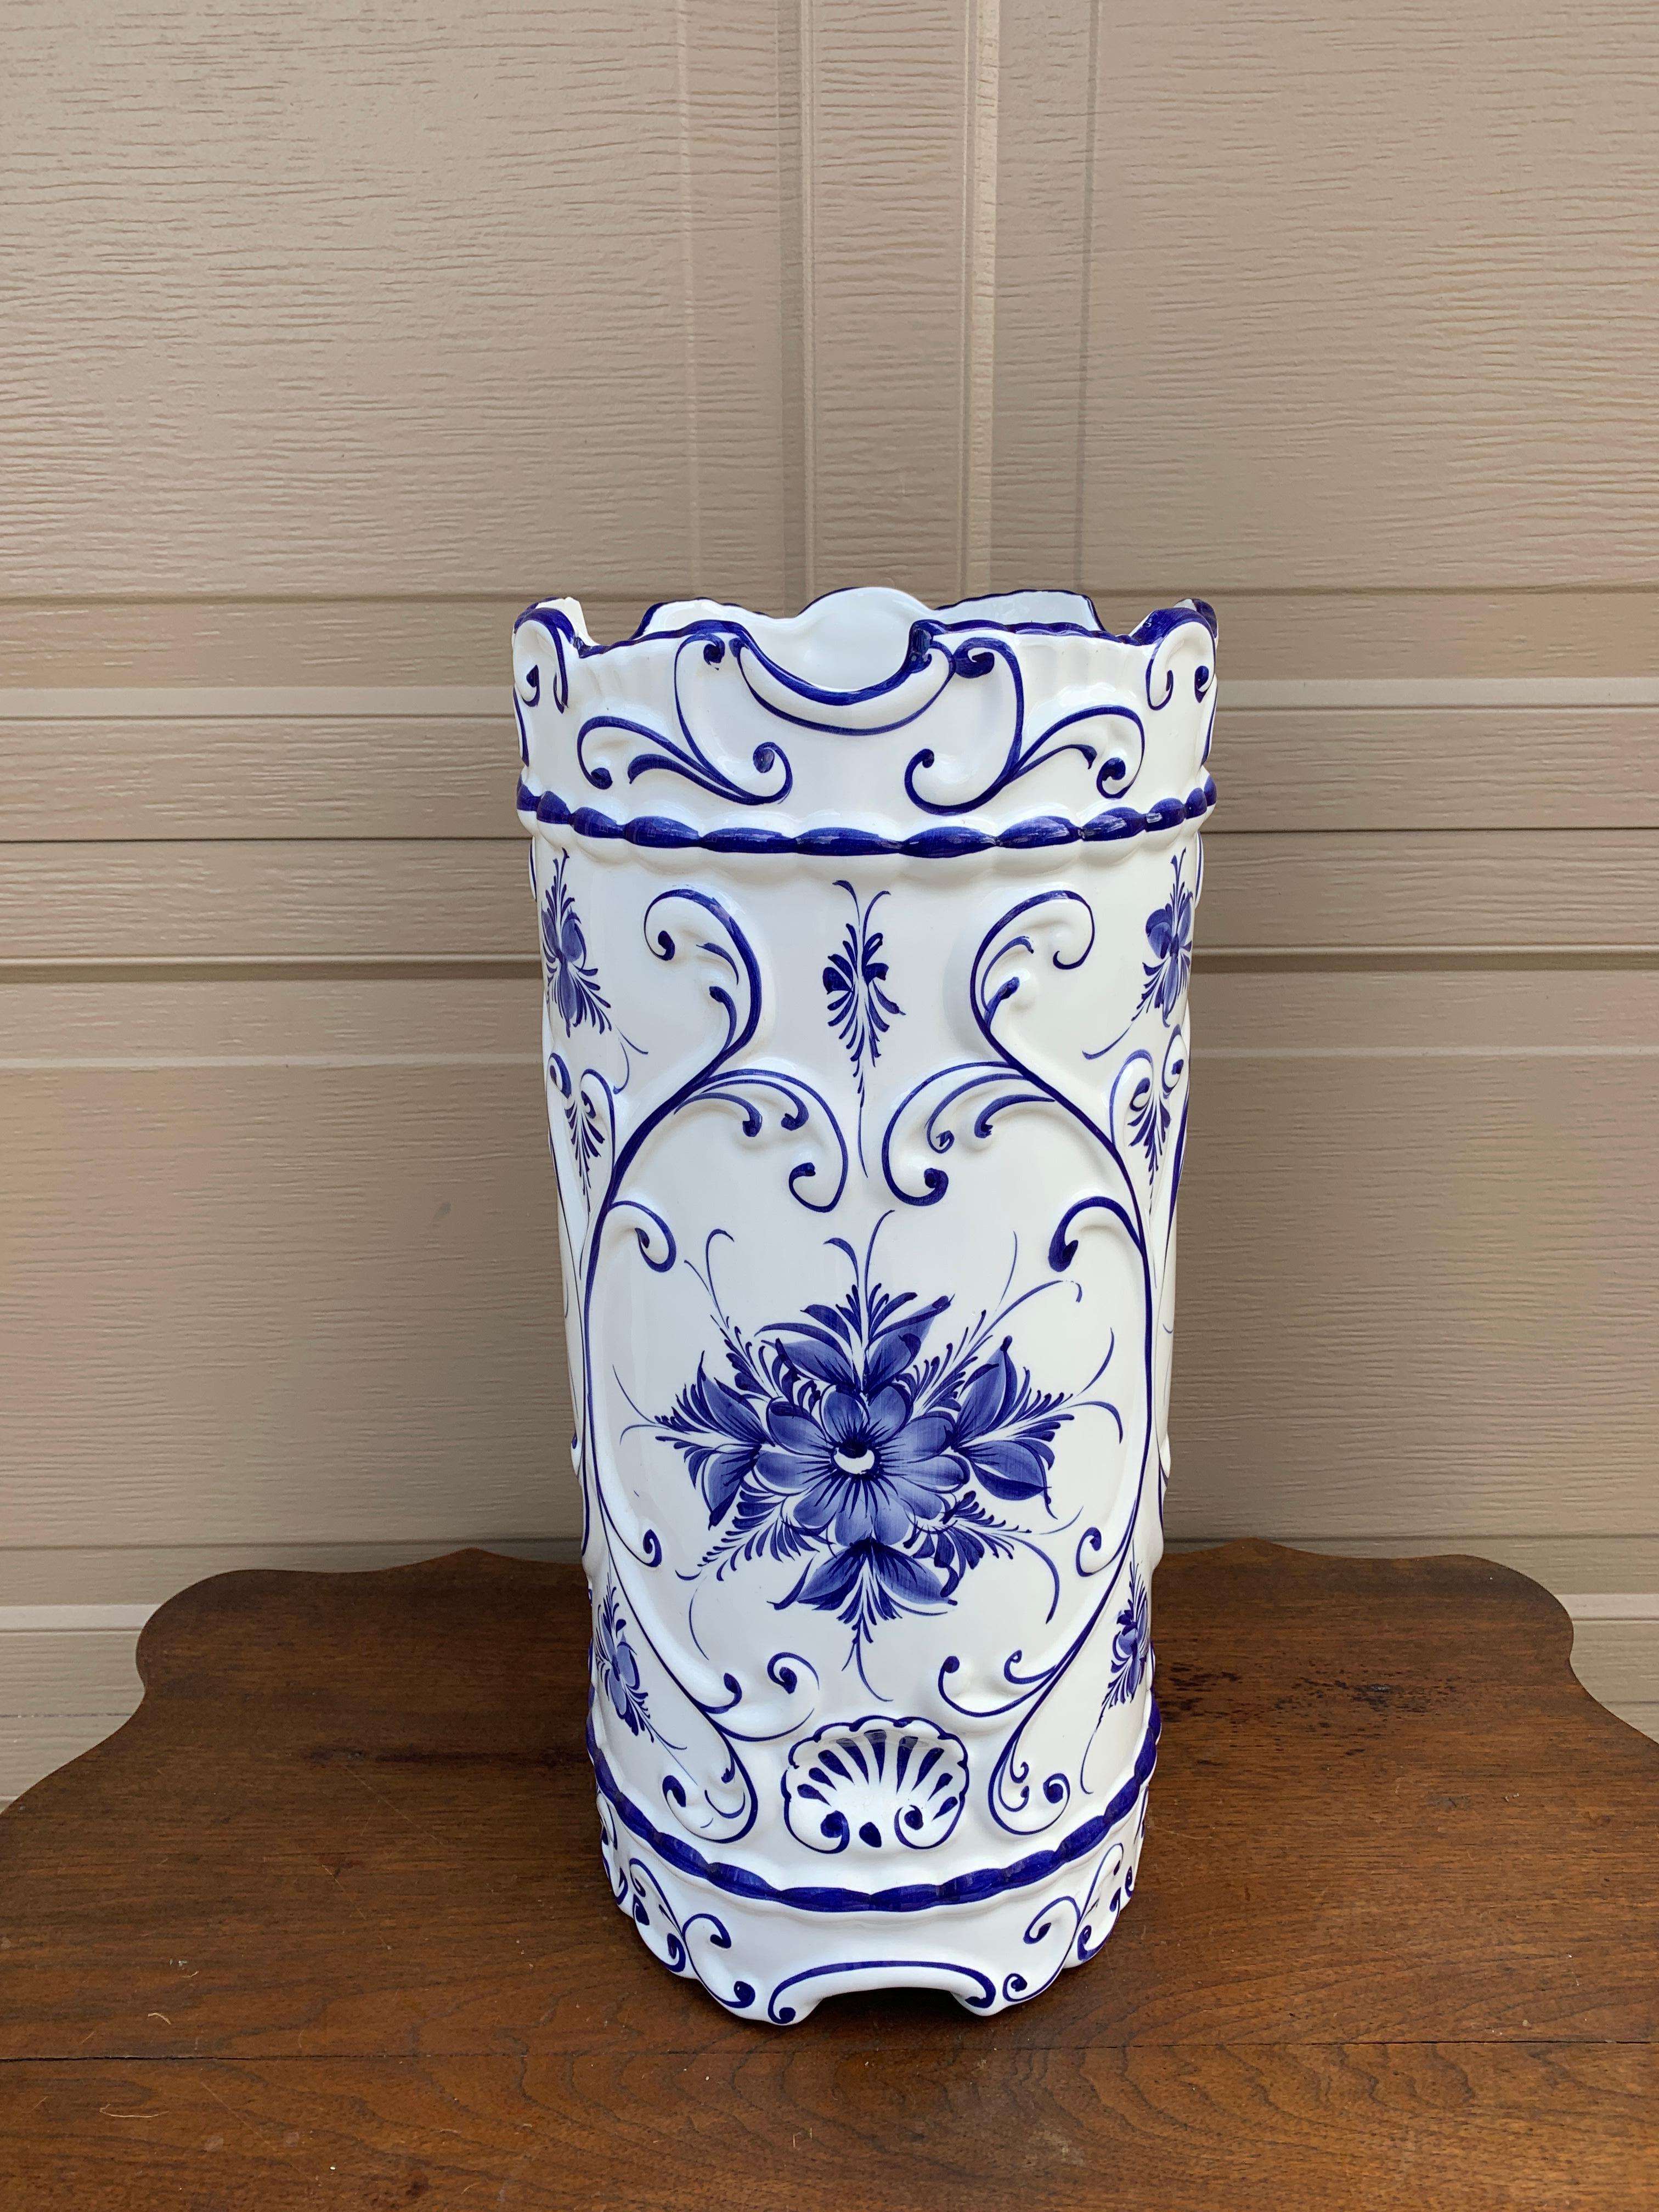 Ein wunderschöner blau-weißer Schirm- oder Stockständer aus Porzellan mit einem handgemalten Design im Stil von Delft

Portugal, ca. 1980er Jahre

Maße: 9 